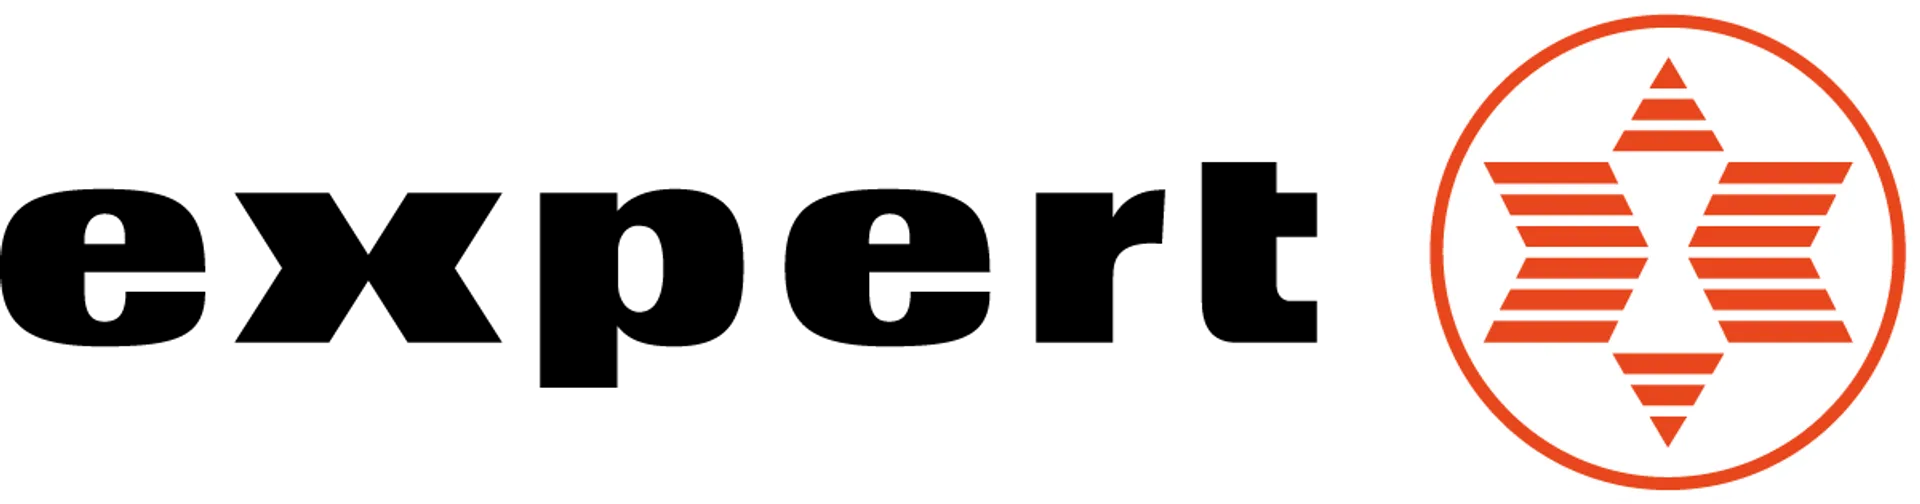 EXPERT logo del volantino attuale